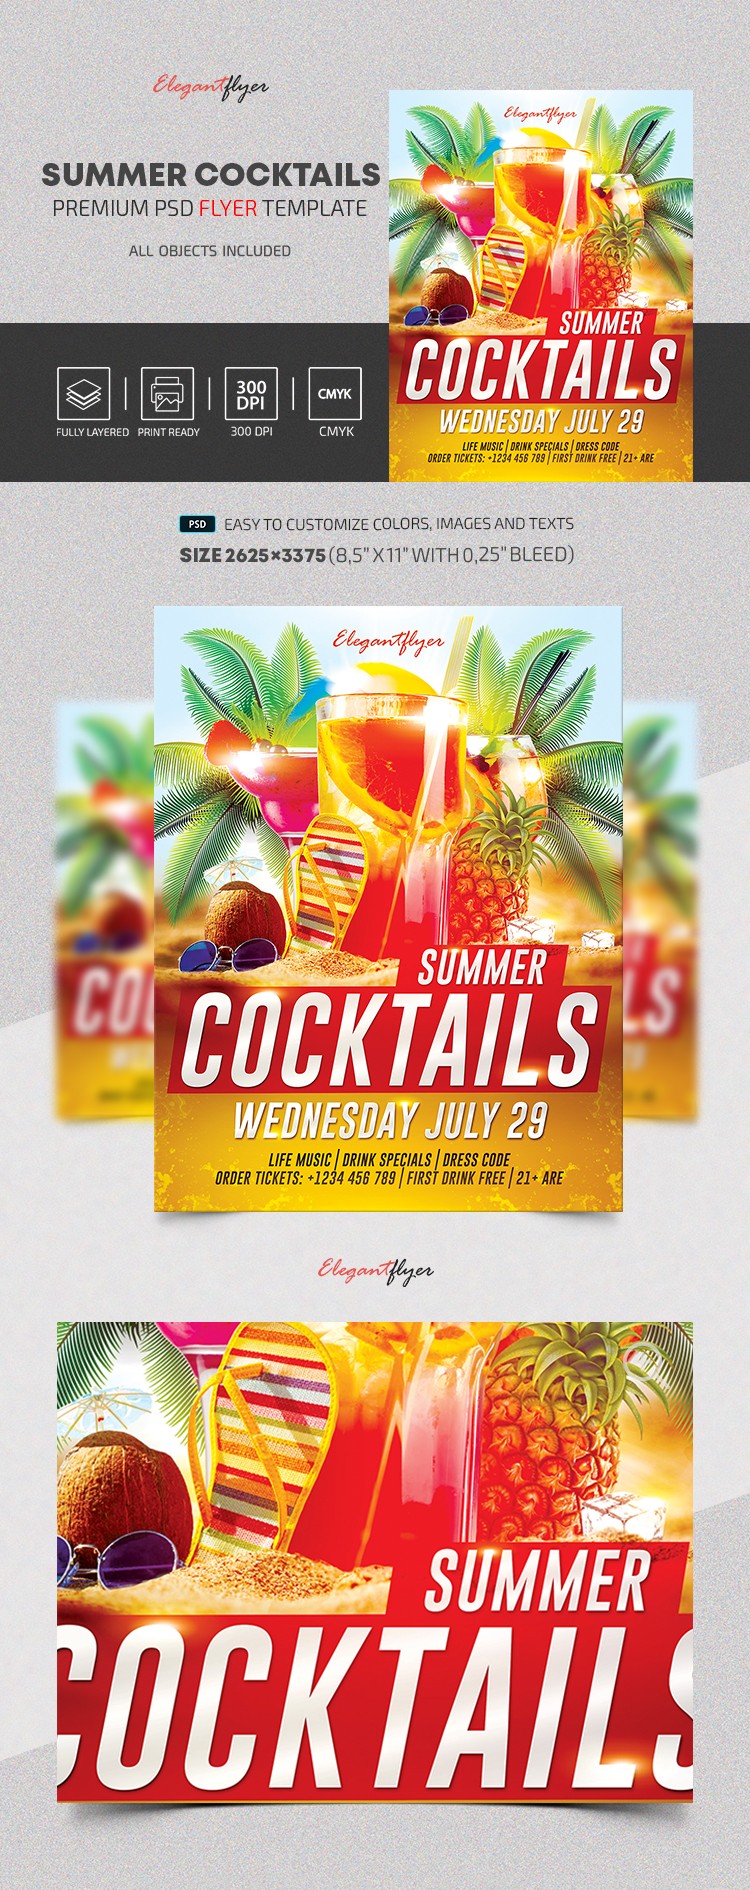 Summer Cocktails by ElegantFlyer